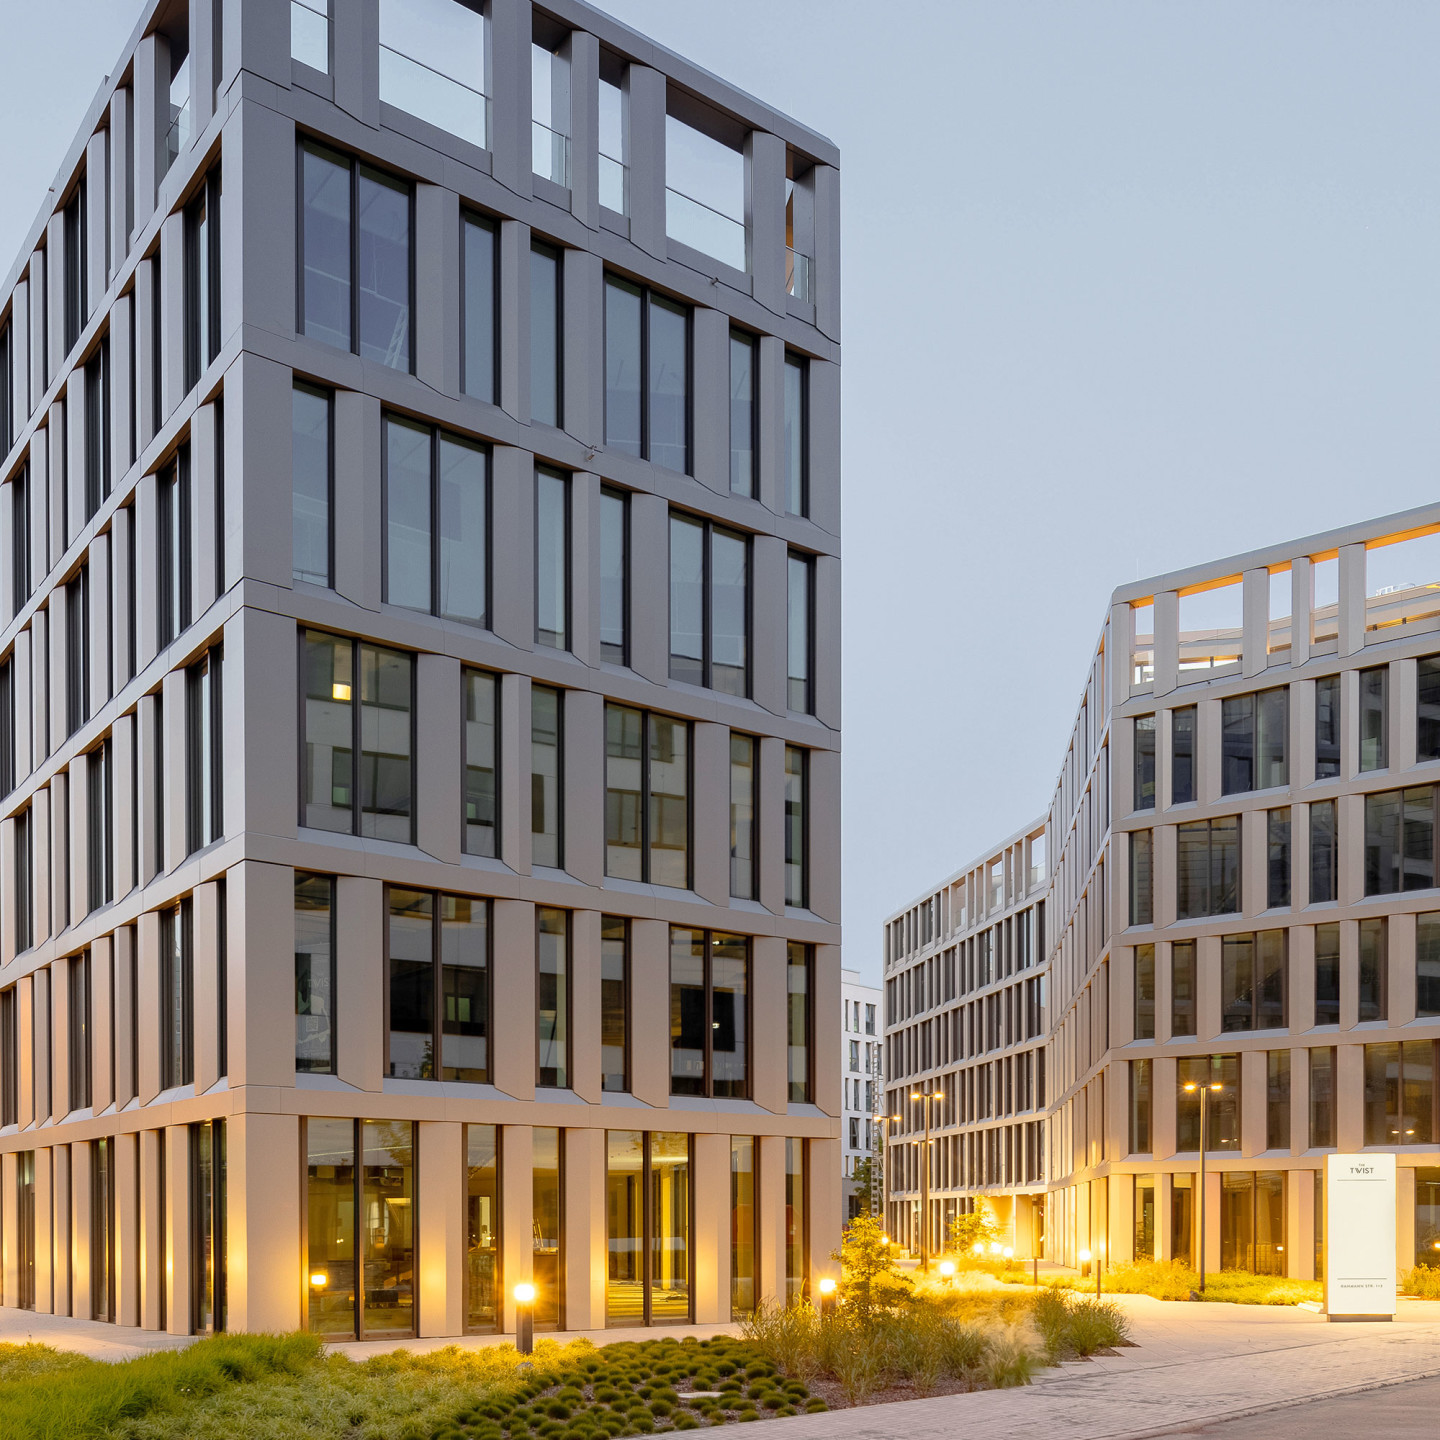 Bild: The Twist, zwei einander zugewandte Bürogebäude in Eschborn mit Grünflächen